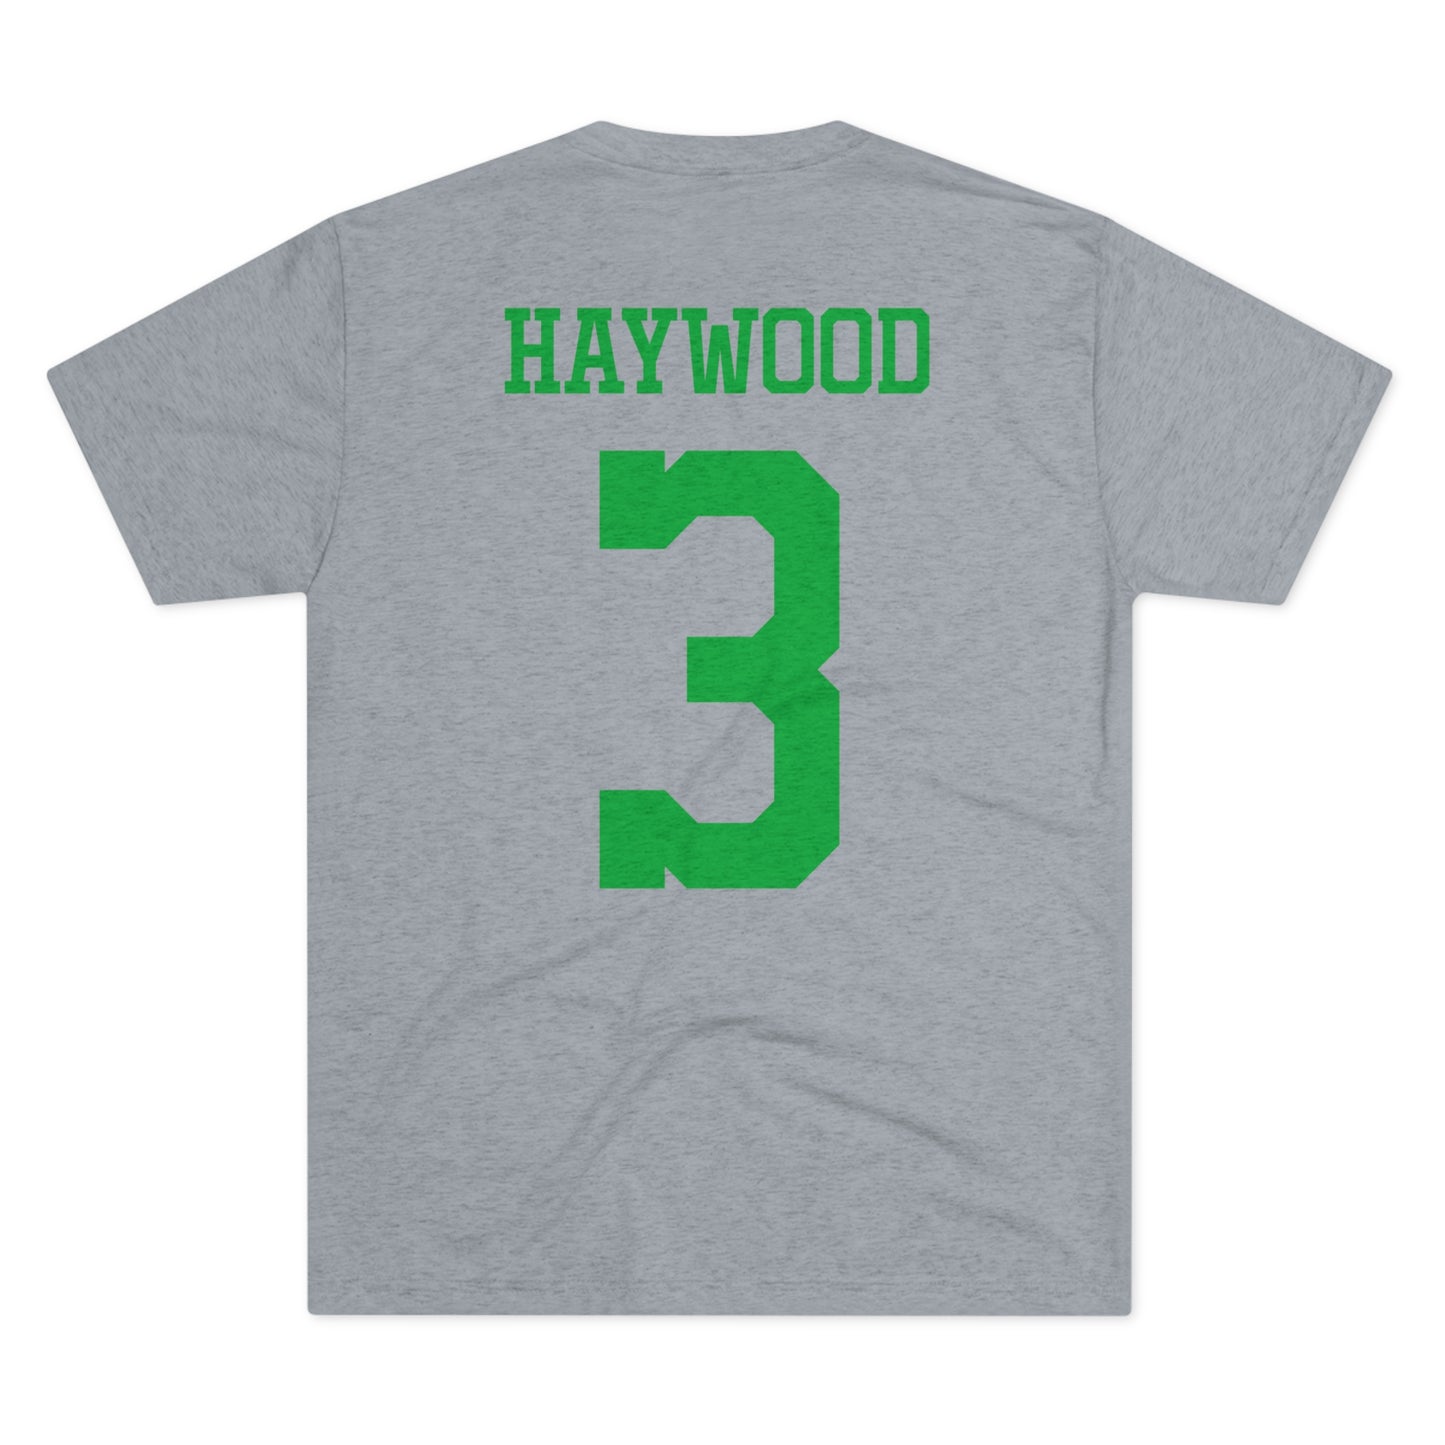 HAYWOOD #3 (option B) - Unisex Tri-Blend Crew Tee